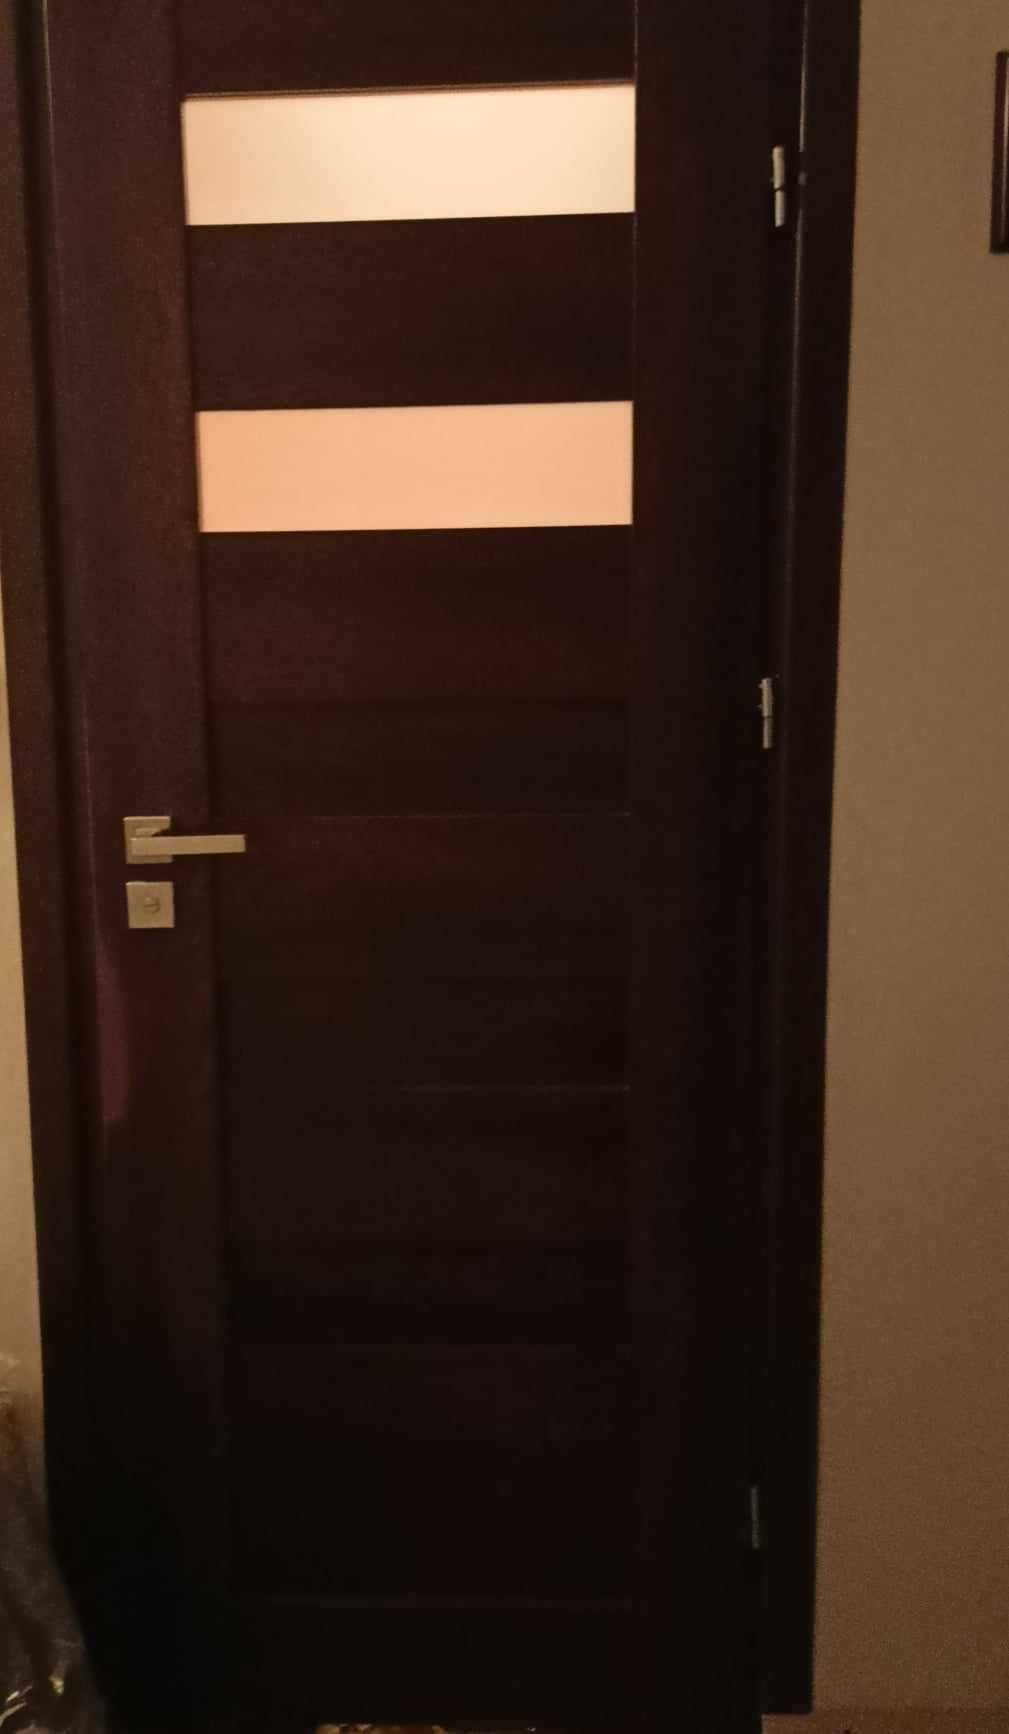 Skrzydło drzwiowe brązowe - do łazienki (1 szt.) i pokoju (3 szt.)